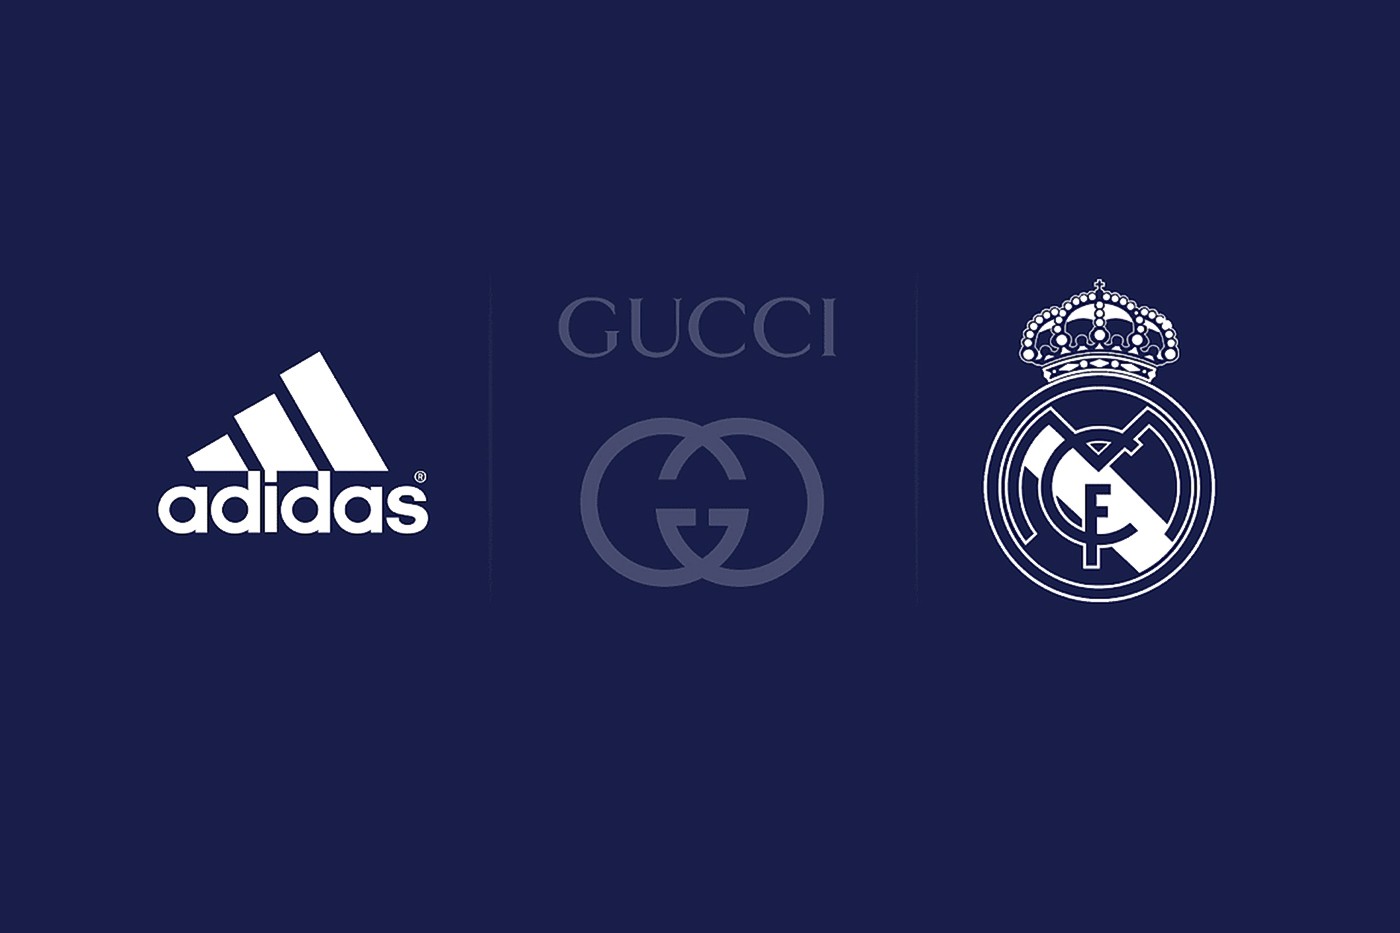 Nhiều thông tin cho rằng Adidas sẽ kết hợp cùng Gucci và câu lạc bộ bóng đá Real Marid của Tây Ban Nha để cho ra mắt một BST thời trang thể thao. Tuy nhiên, chưa có bất kỳ thông tin nào chính xác.